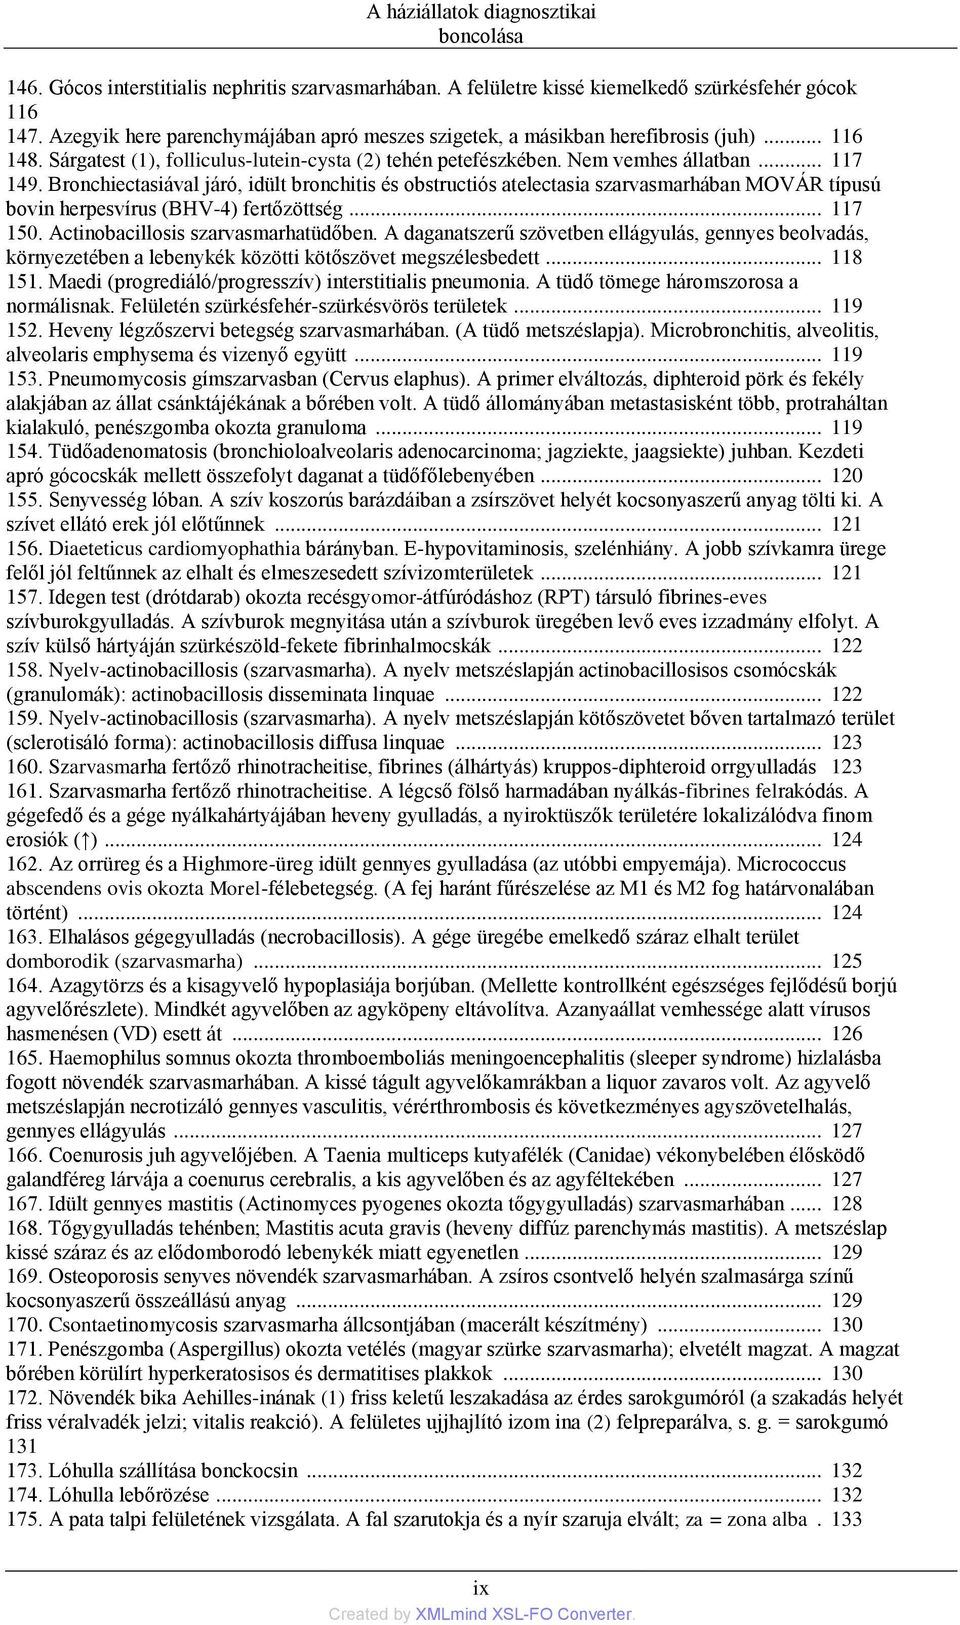 A háziállatok diagnosztikai boncolása dr. Vetési, Ferenc dr. Mészáros, M.  János - PDF Ingyenes letöltés